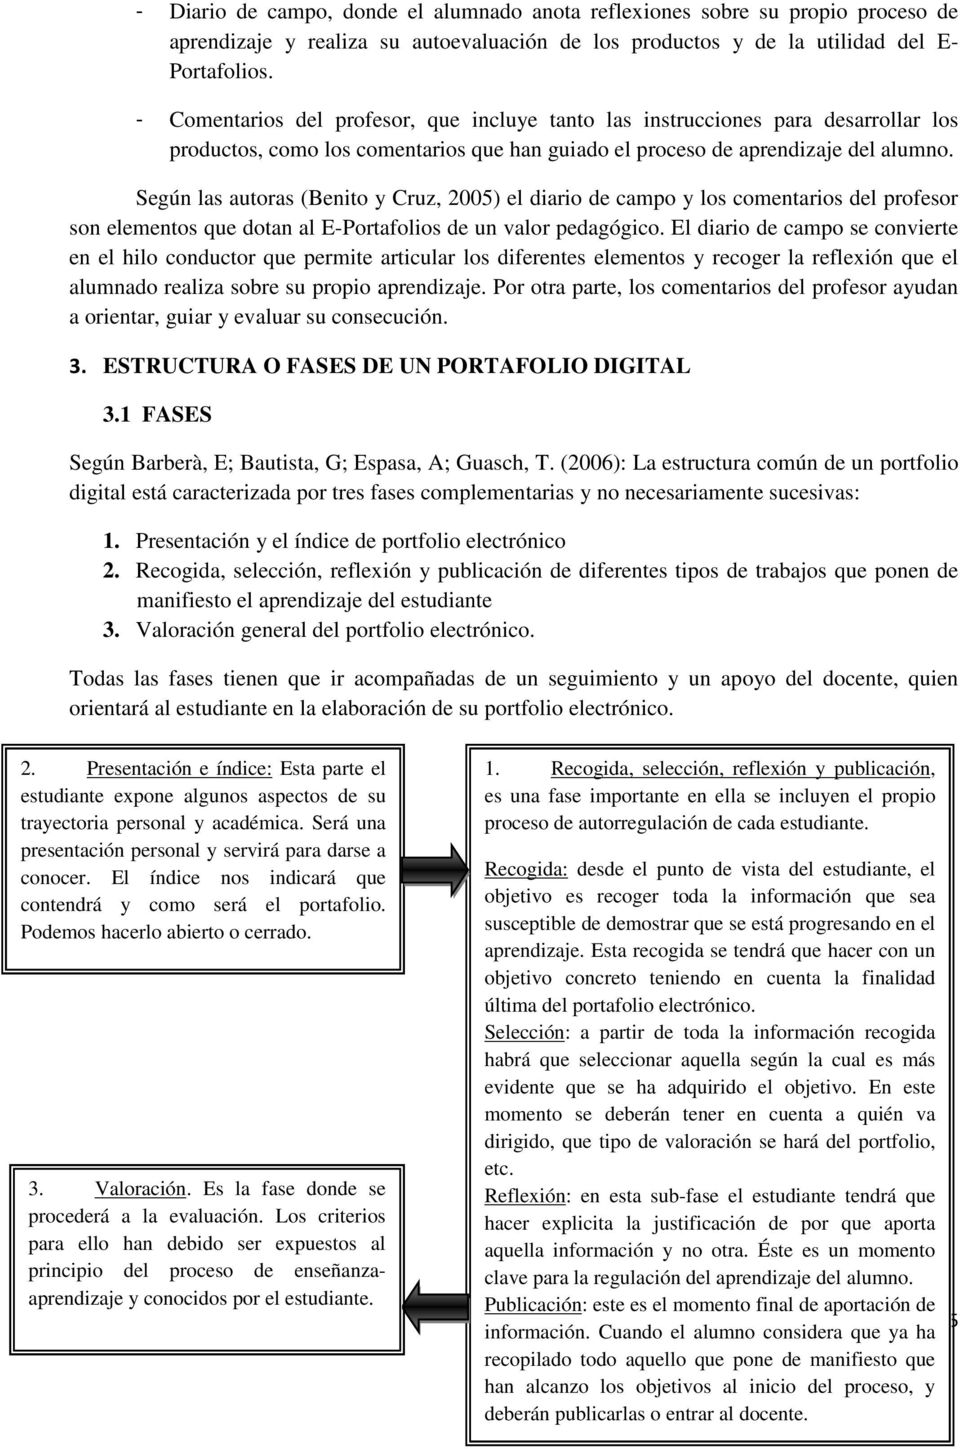 Según las autoras (Benito y Cruz, 2005) el diario de campo y los comentarios del profesor son elementos que dotan al E-Portafolios de un valor pedagógico.